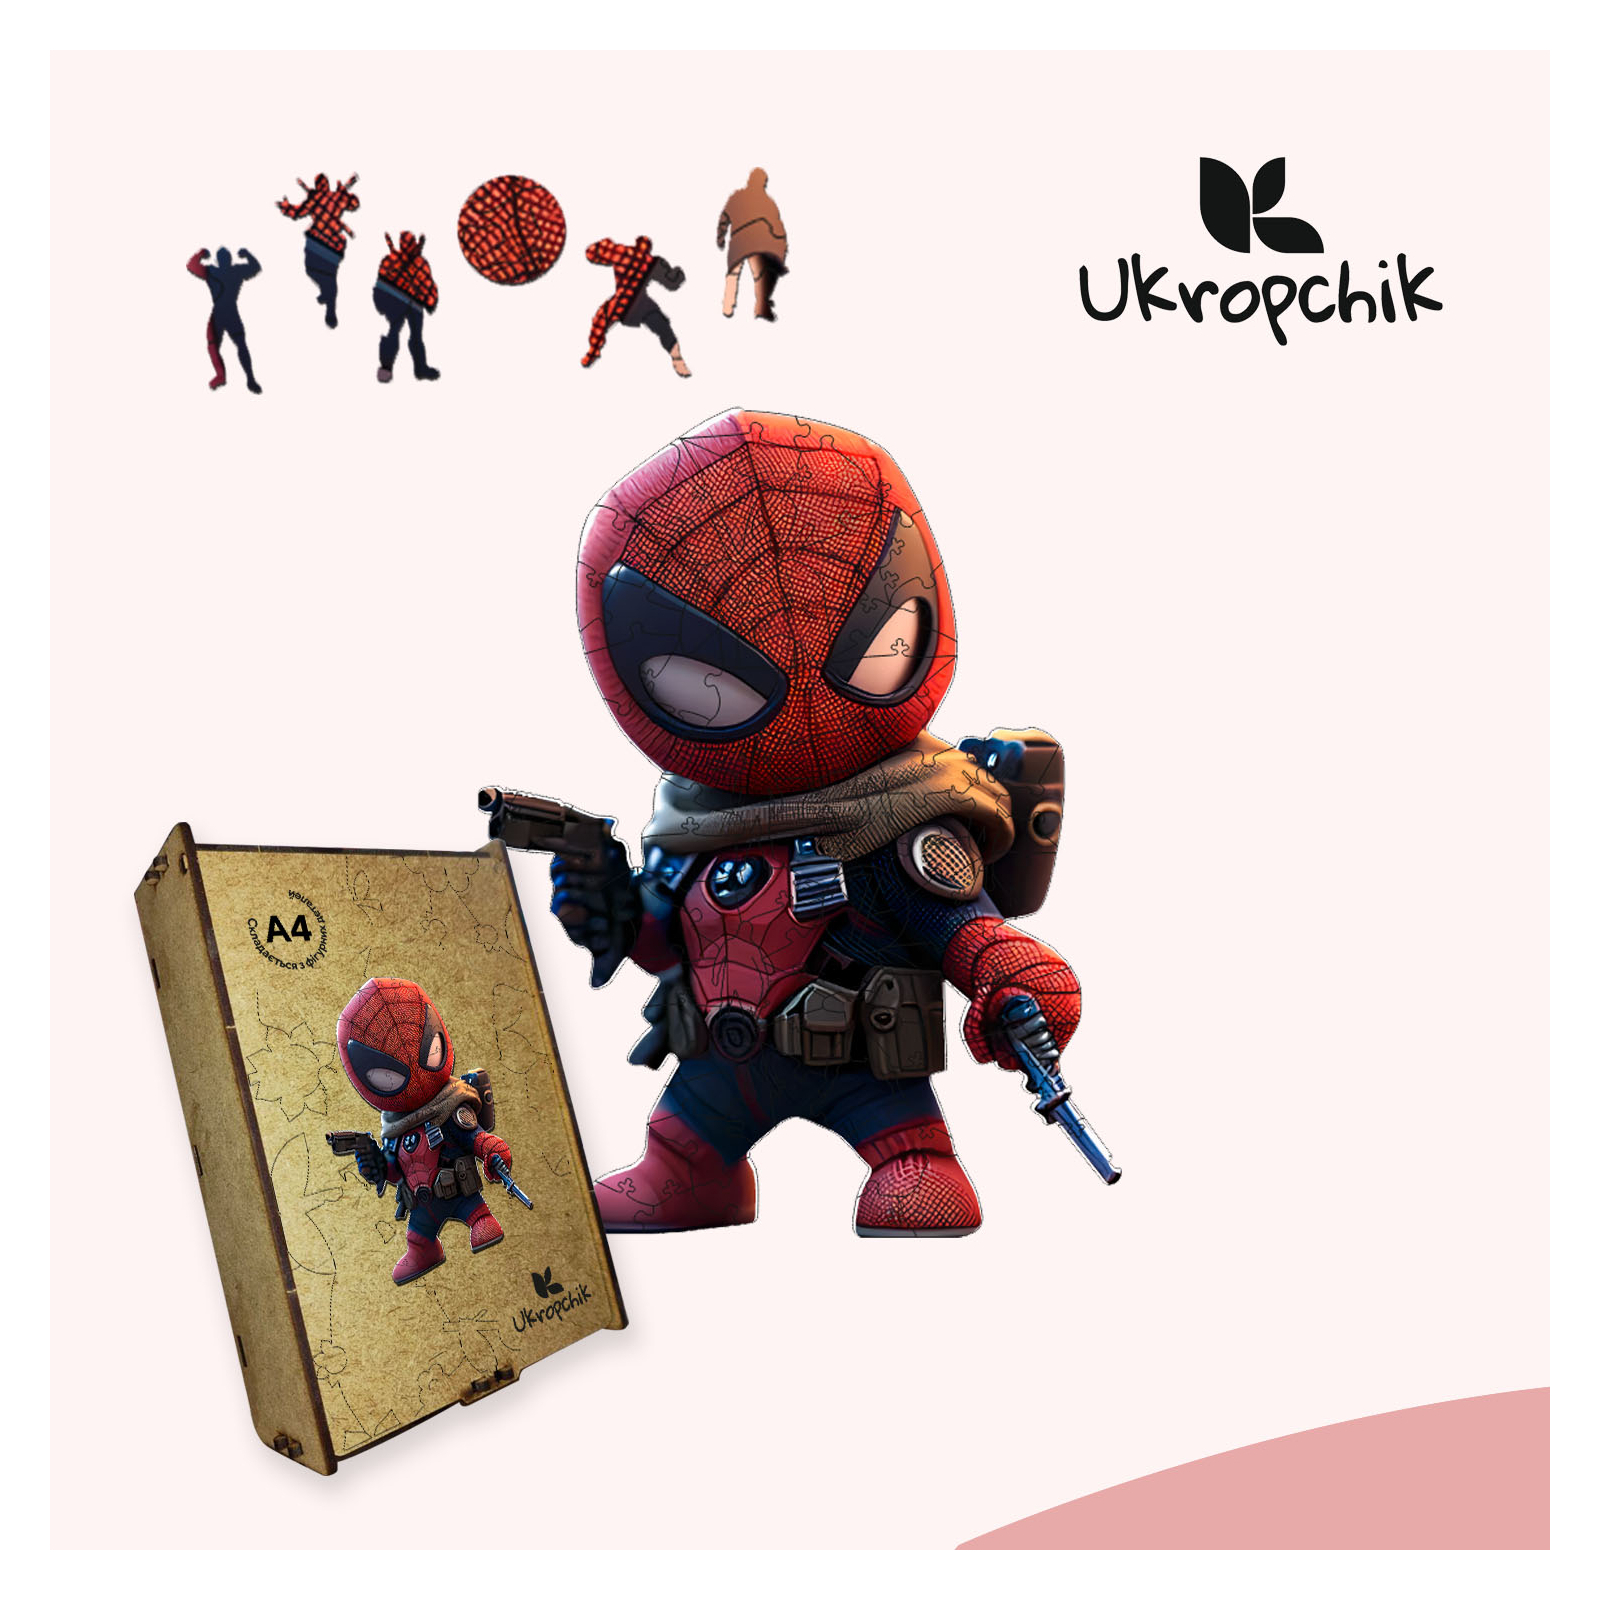 Пазл Ukropchik дерев'яний Супергерой Дедпул size - M в коробці з набором-рамкою (Deadpool Superhero A4) зображення 5